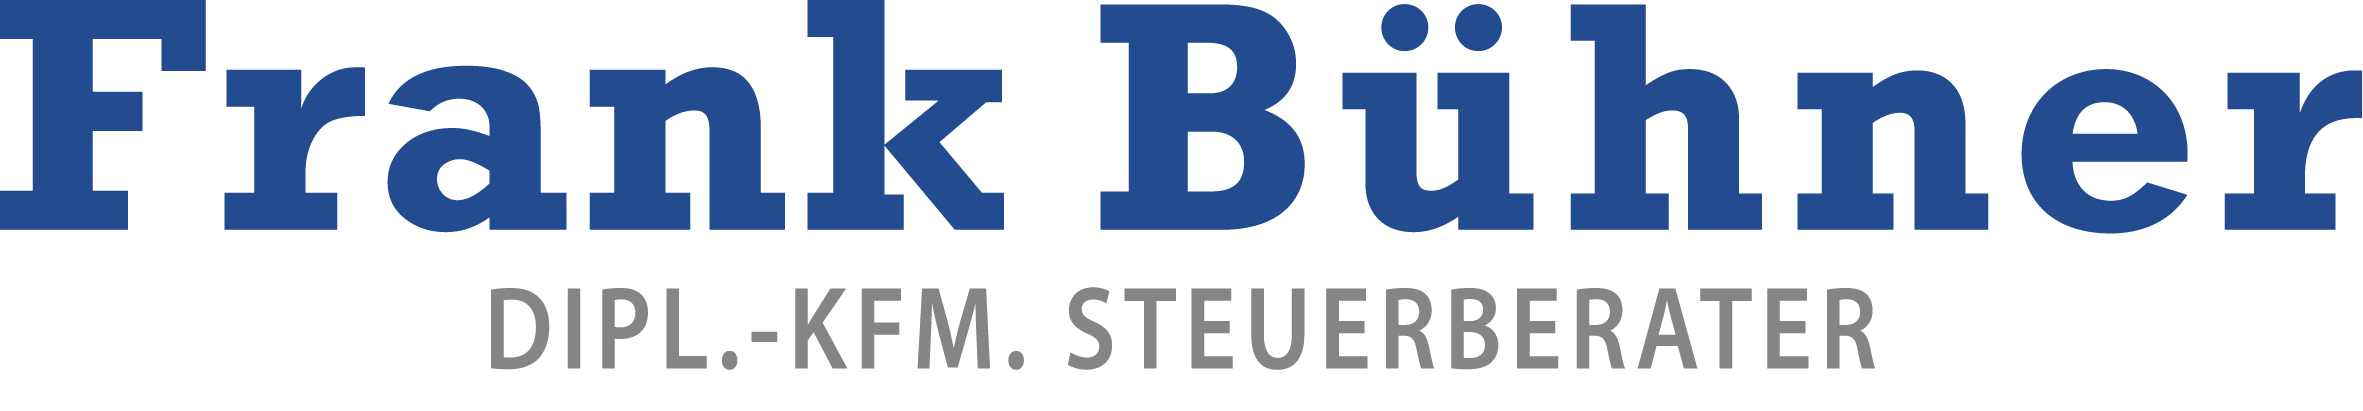 Steuerberatung Bühner Logo